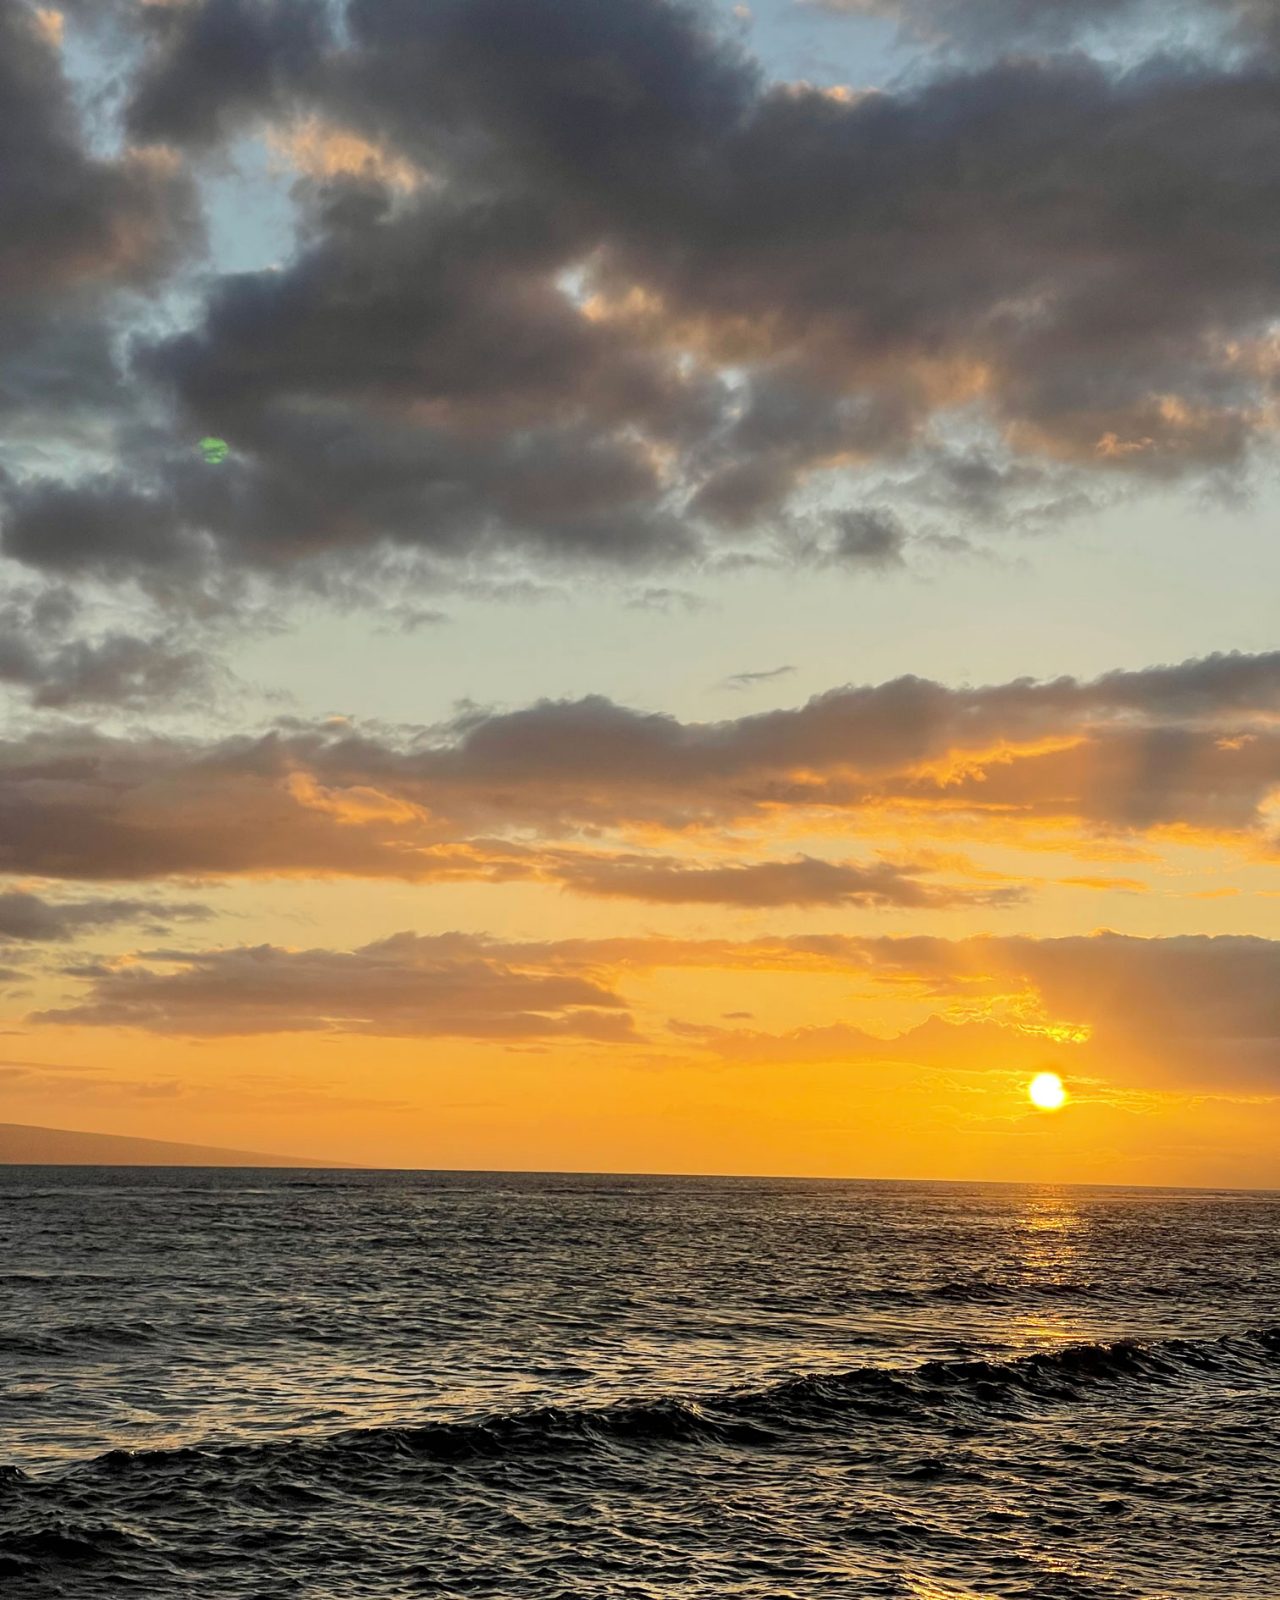 Quoi visiter à Maui, Hawaï? Voici les incontournables de Cath Peach!